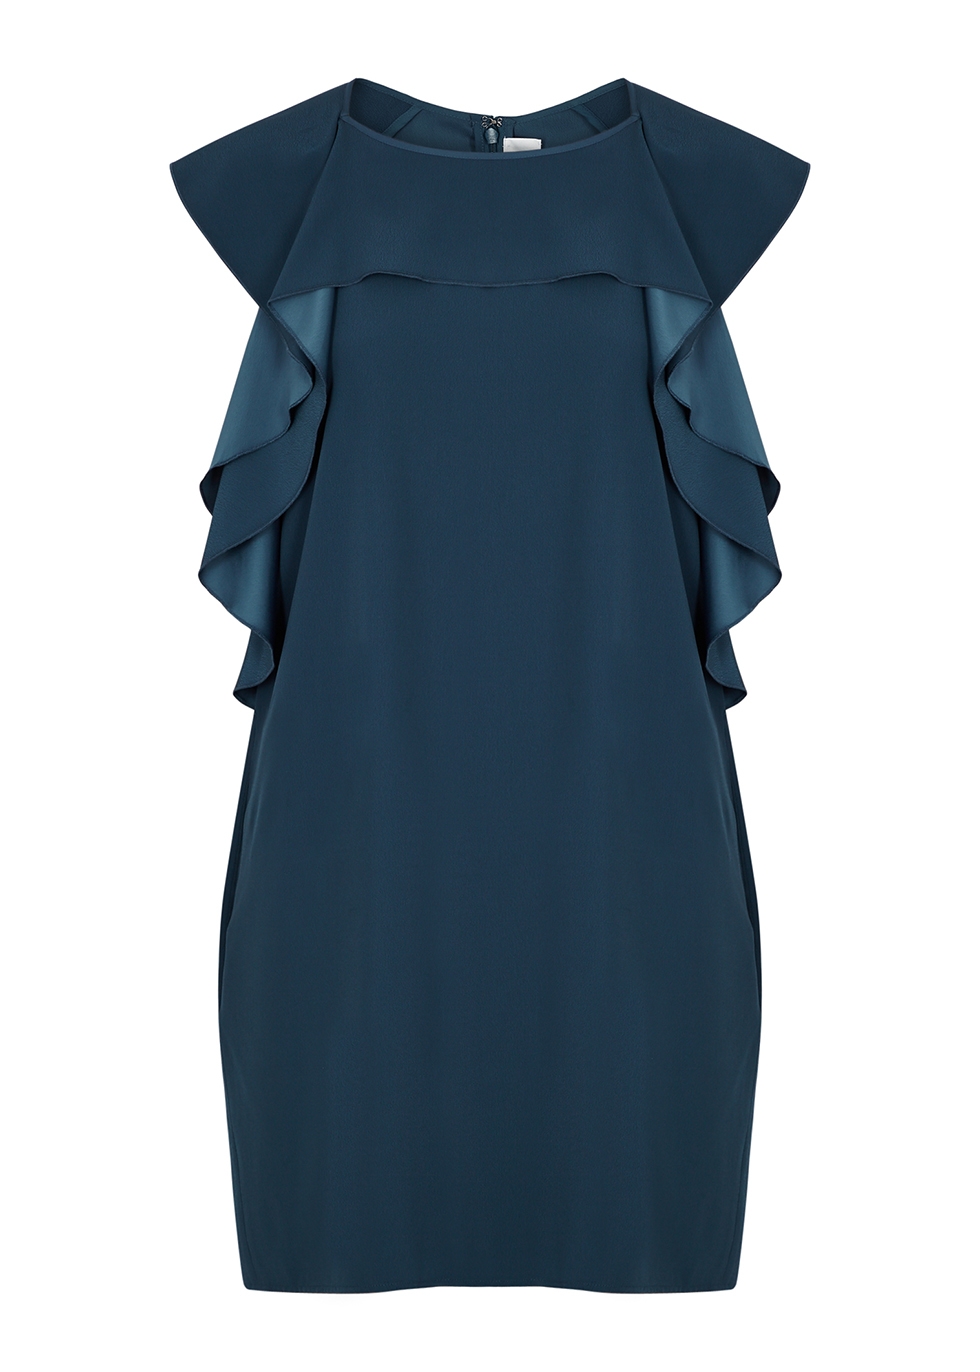 Blue ruffle-trimmed dress